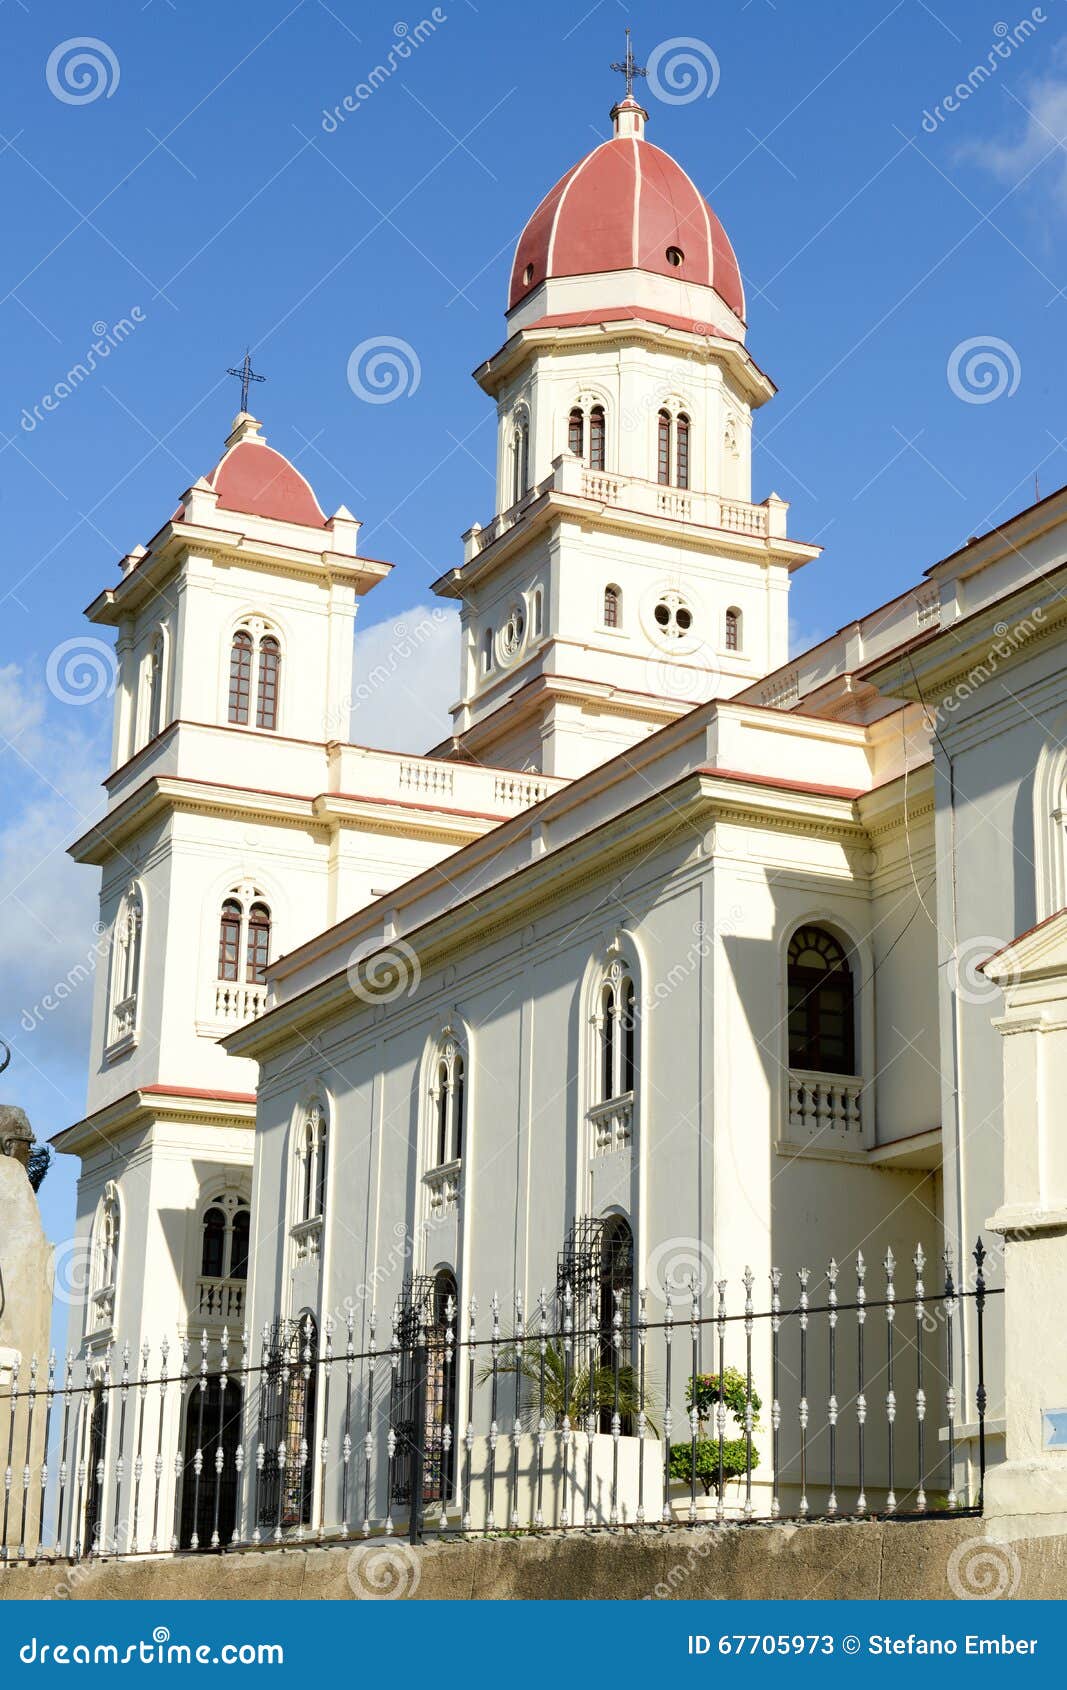 el cobre very famous church 13km from santiago de cuba